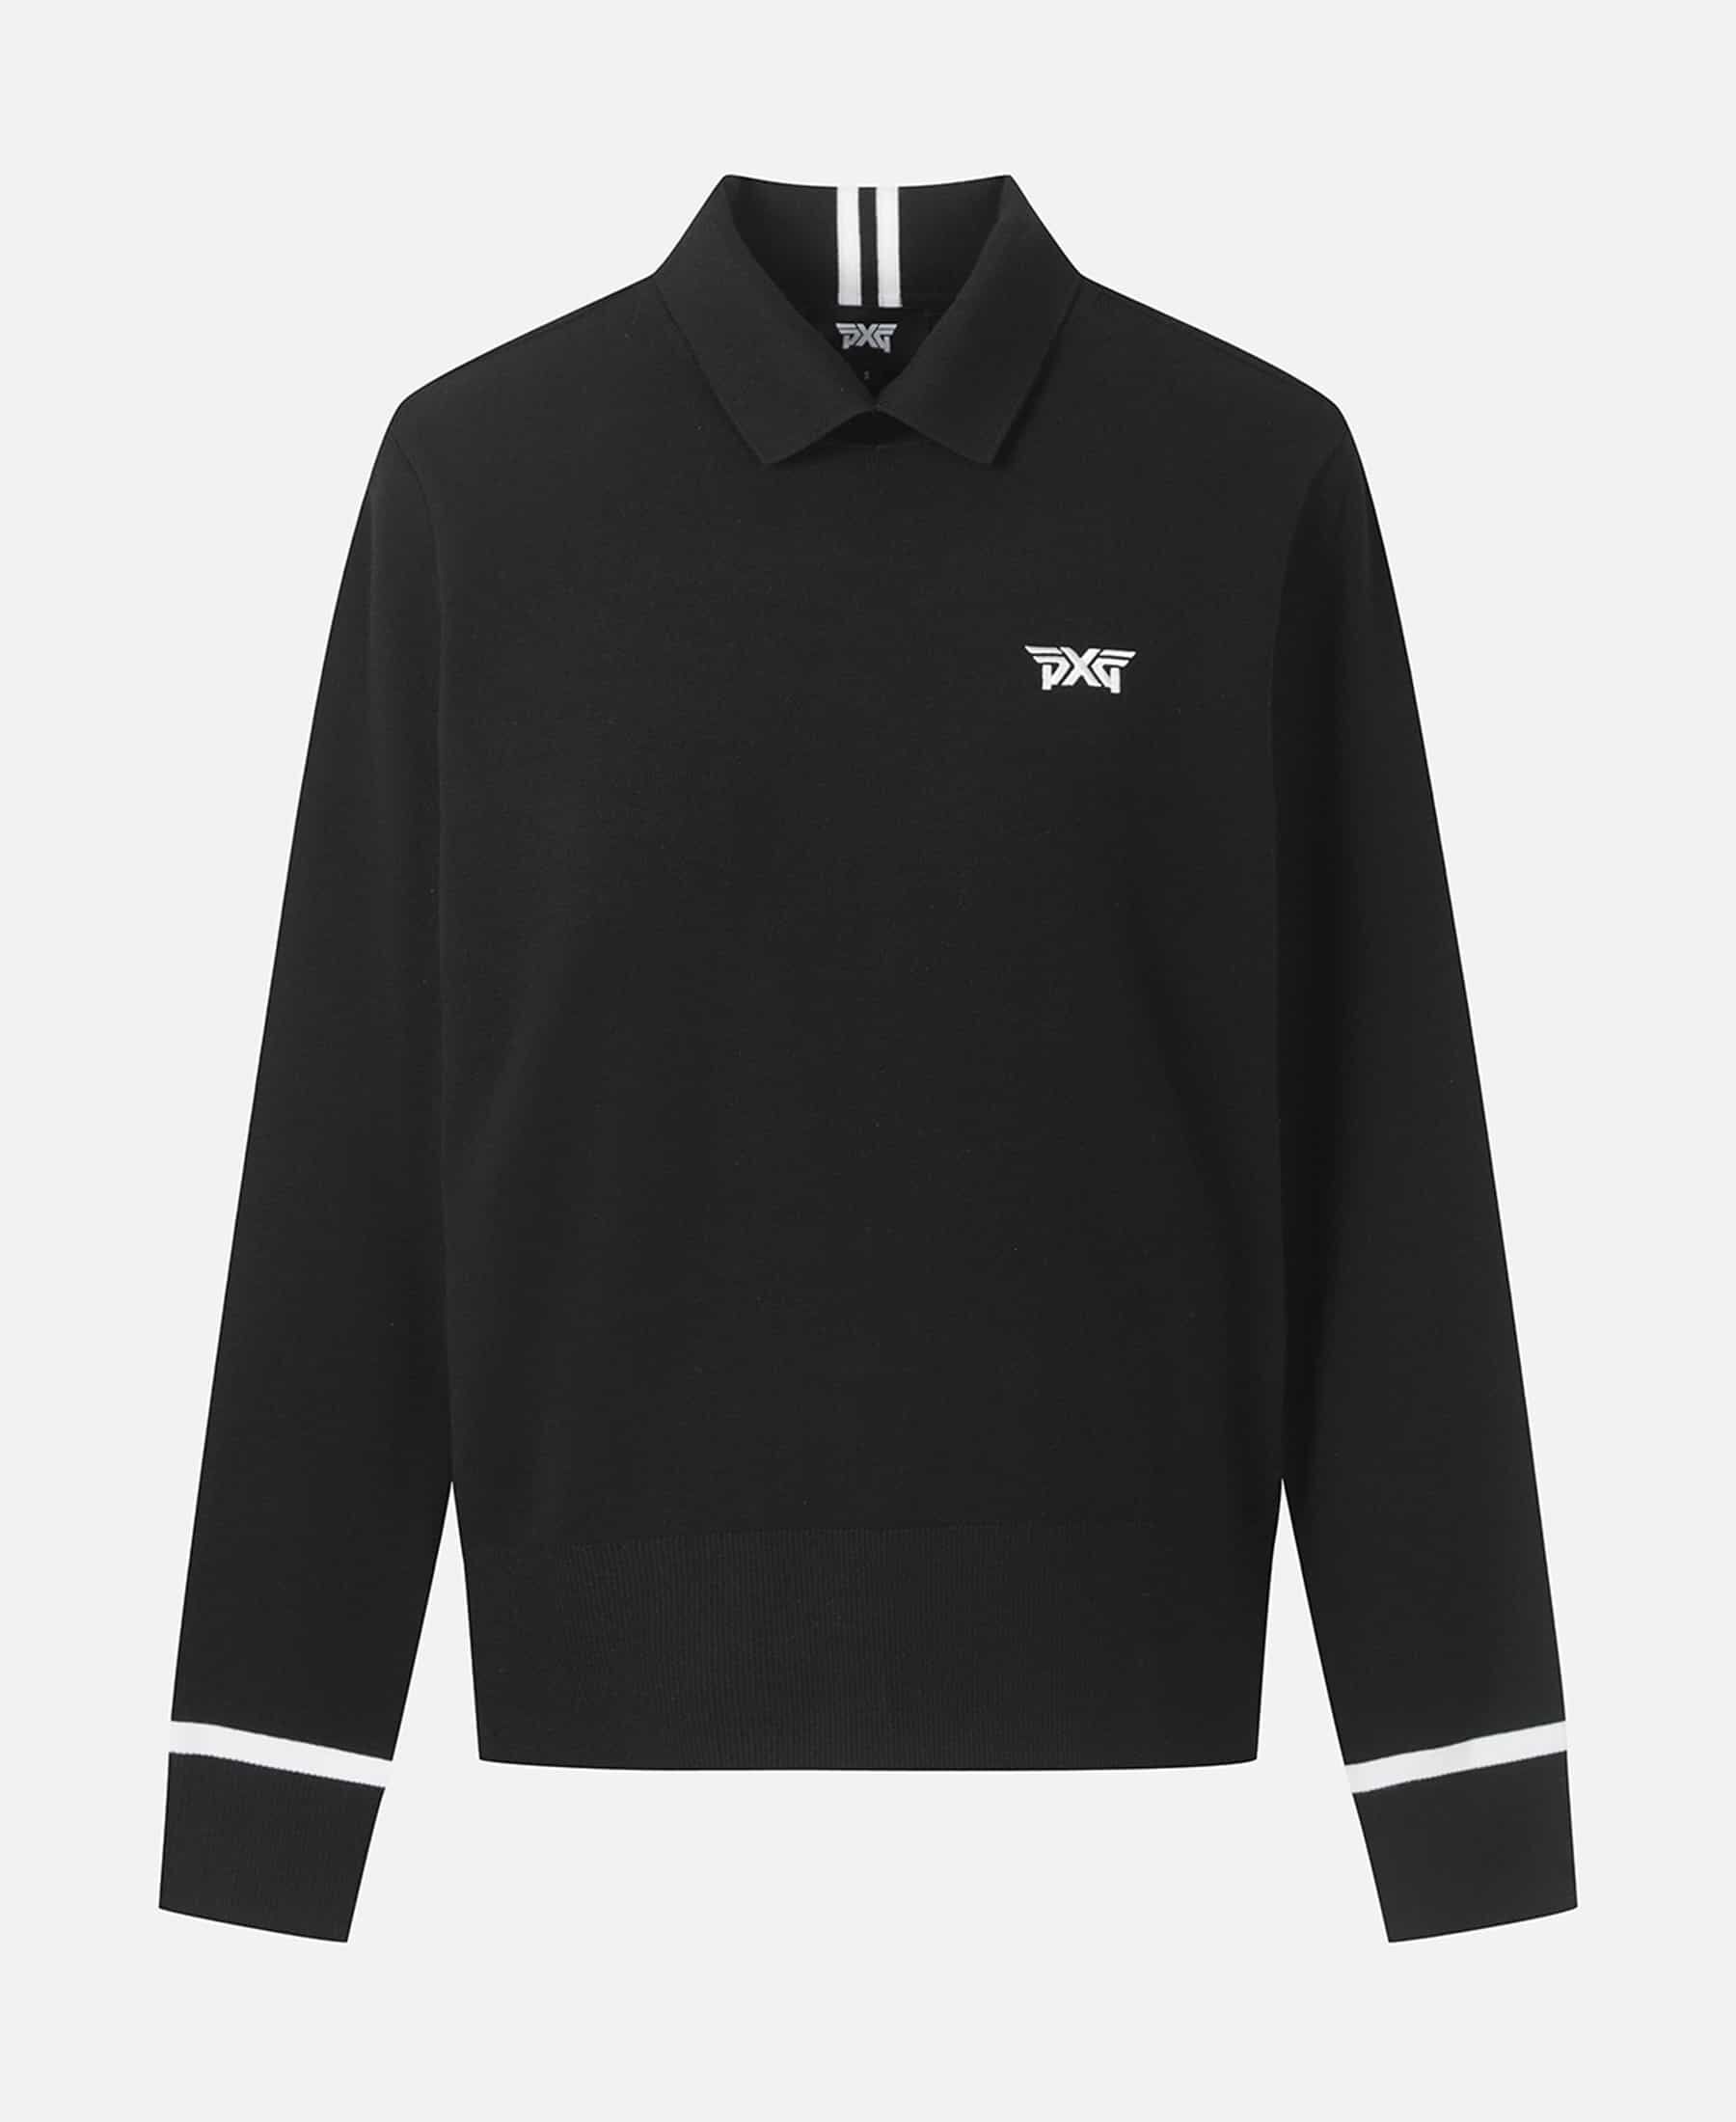 Buy Women's FAカラーネックセーター - ブラック | PXG JP